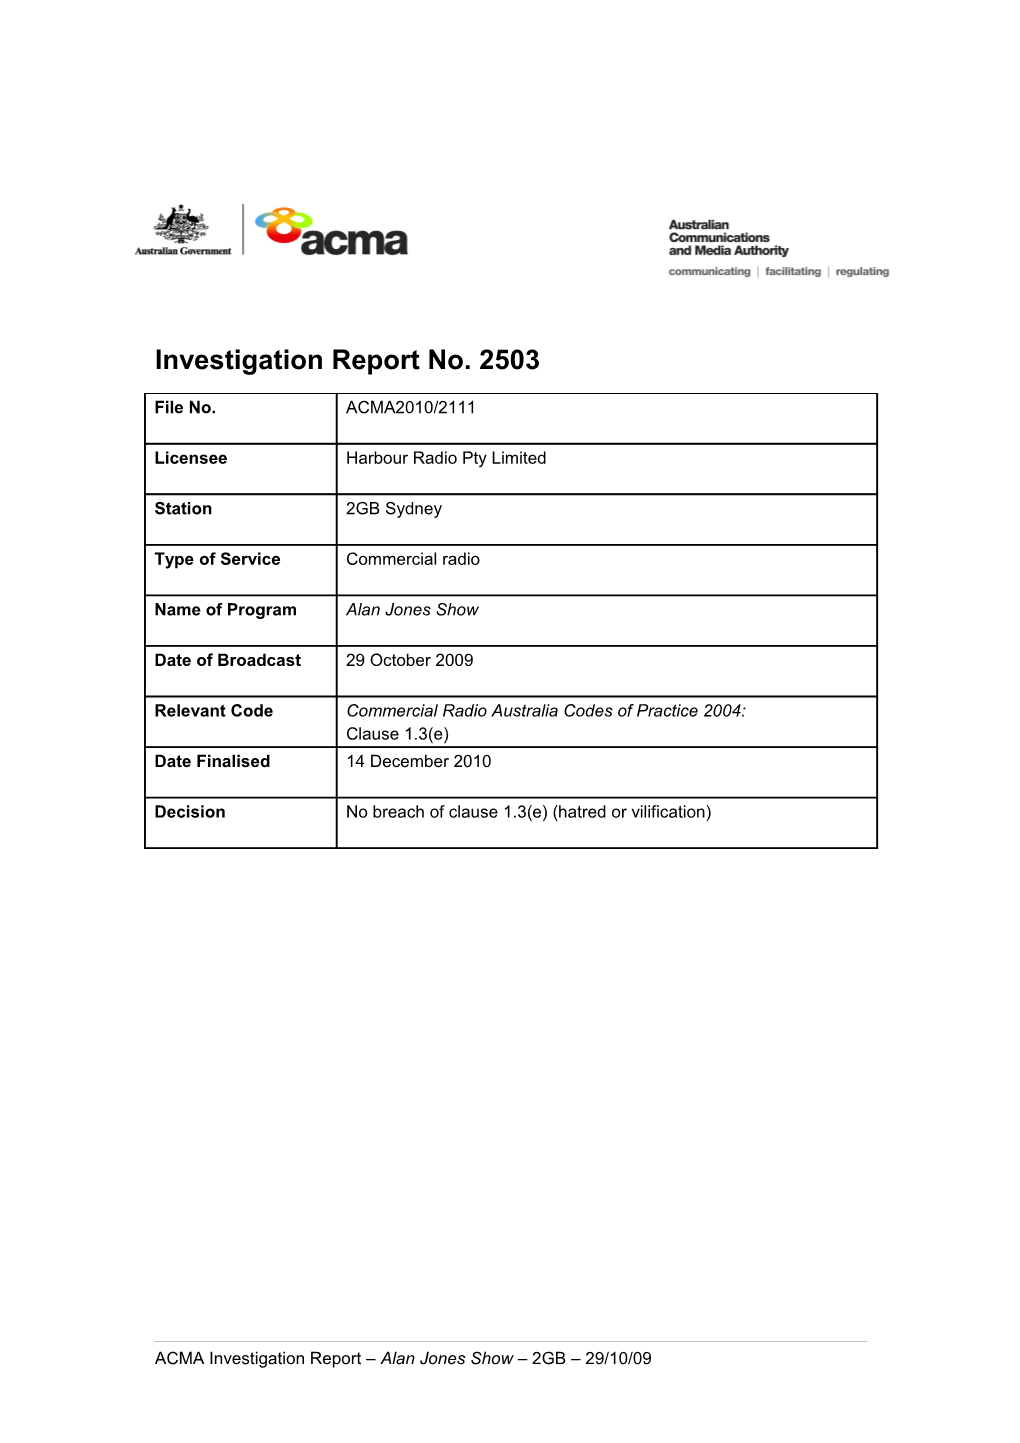 2GB - ACMA Investigation Report 2503